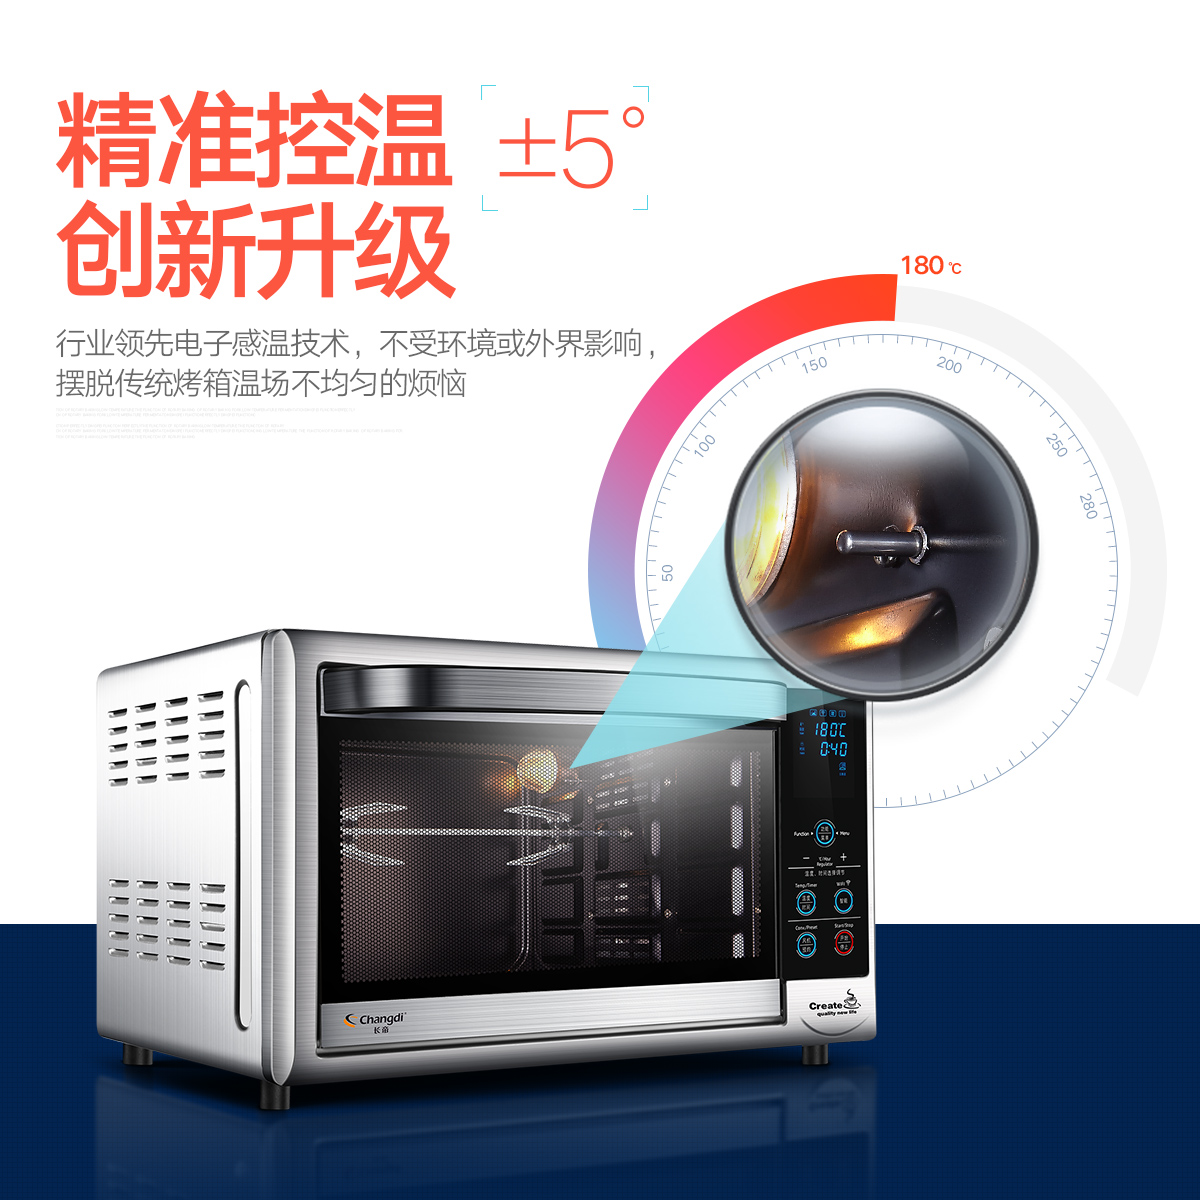 【阿里智能】长帝 CRDF30A蛋糕面包电烤箱多功能烘焙家用30L正品产品展示图3